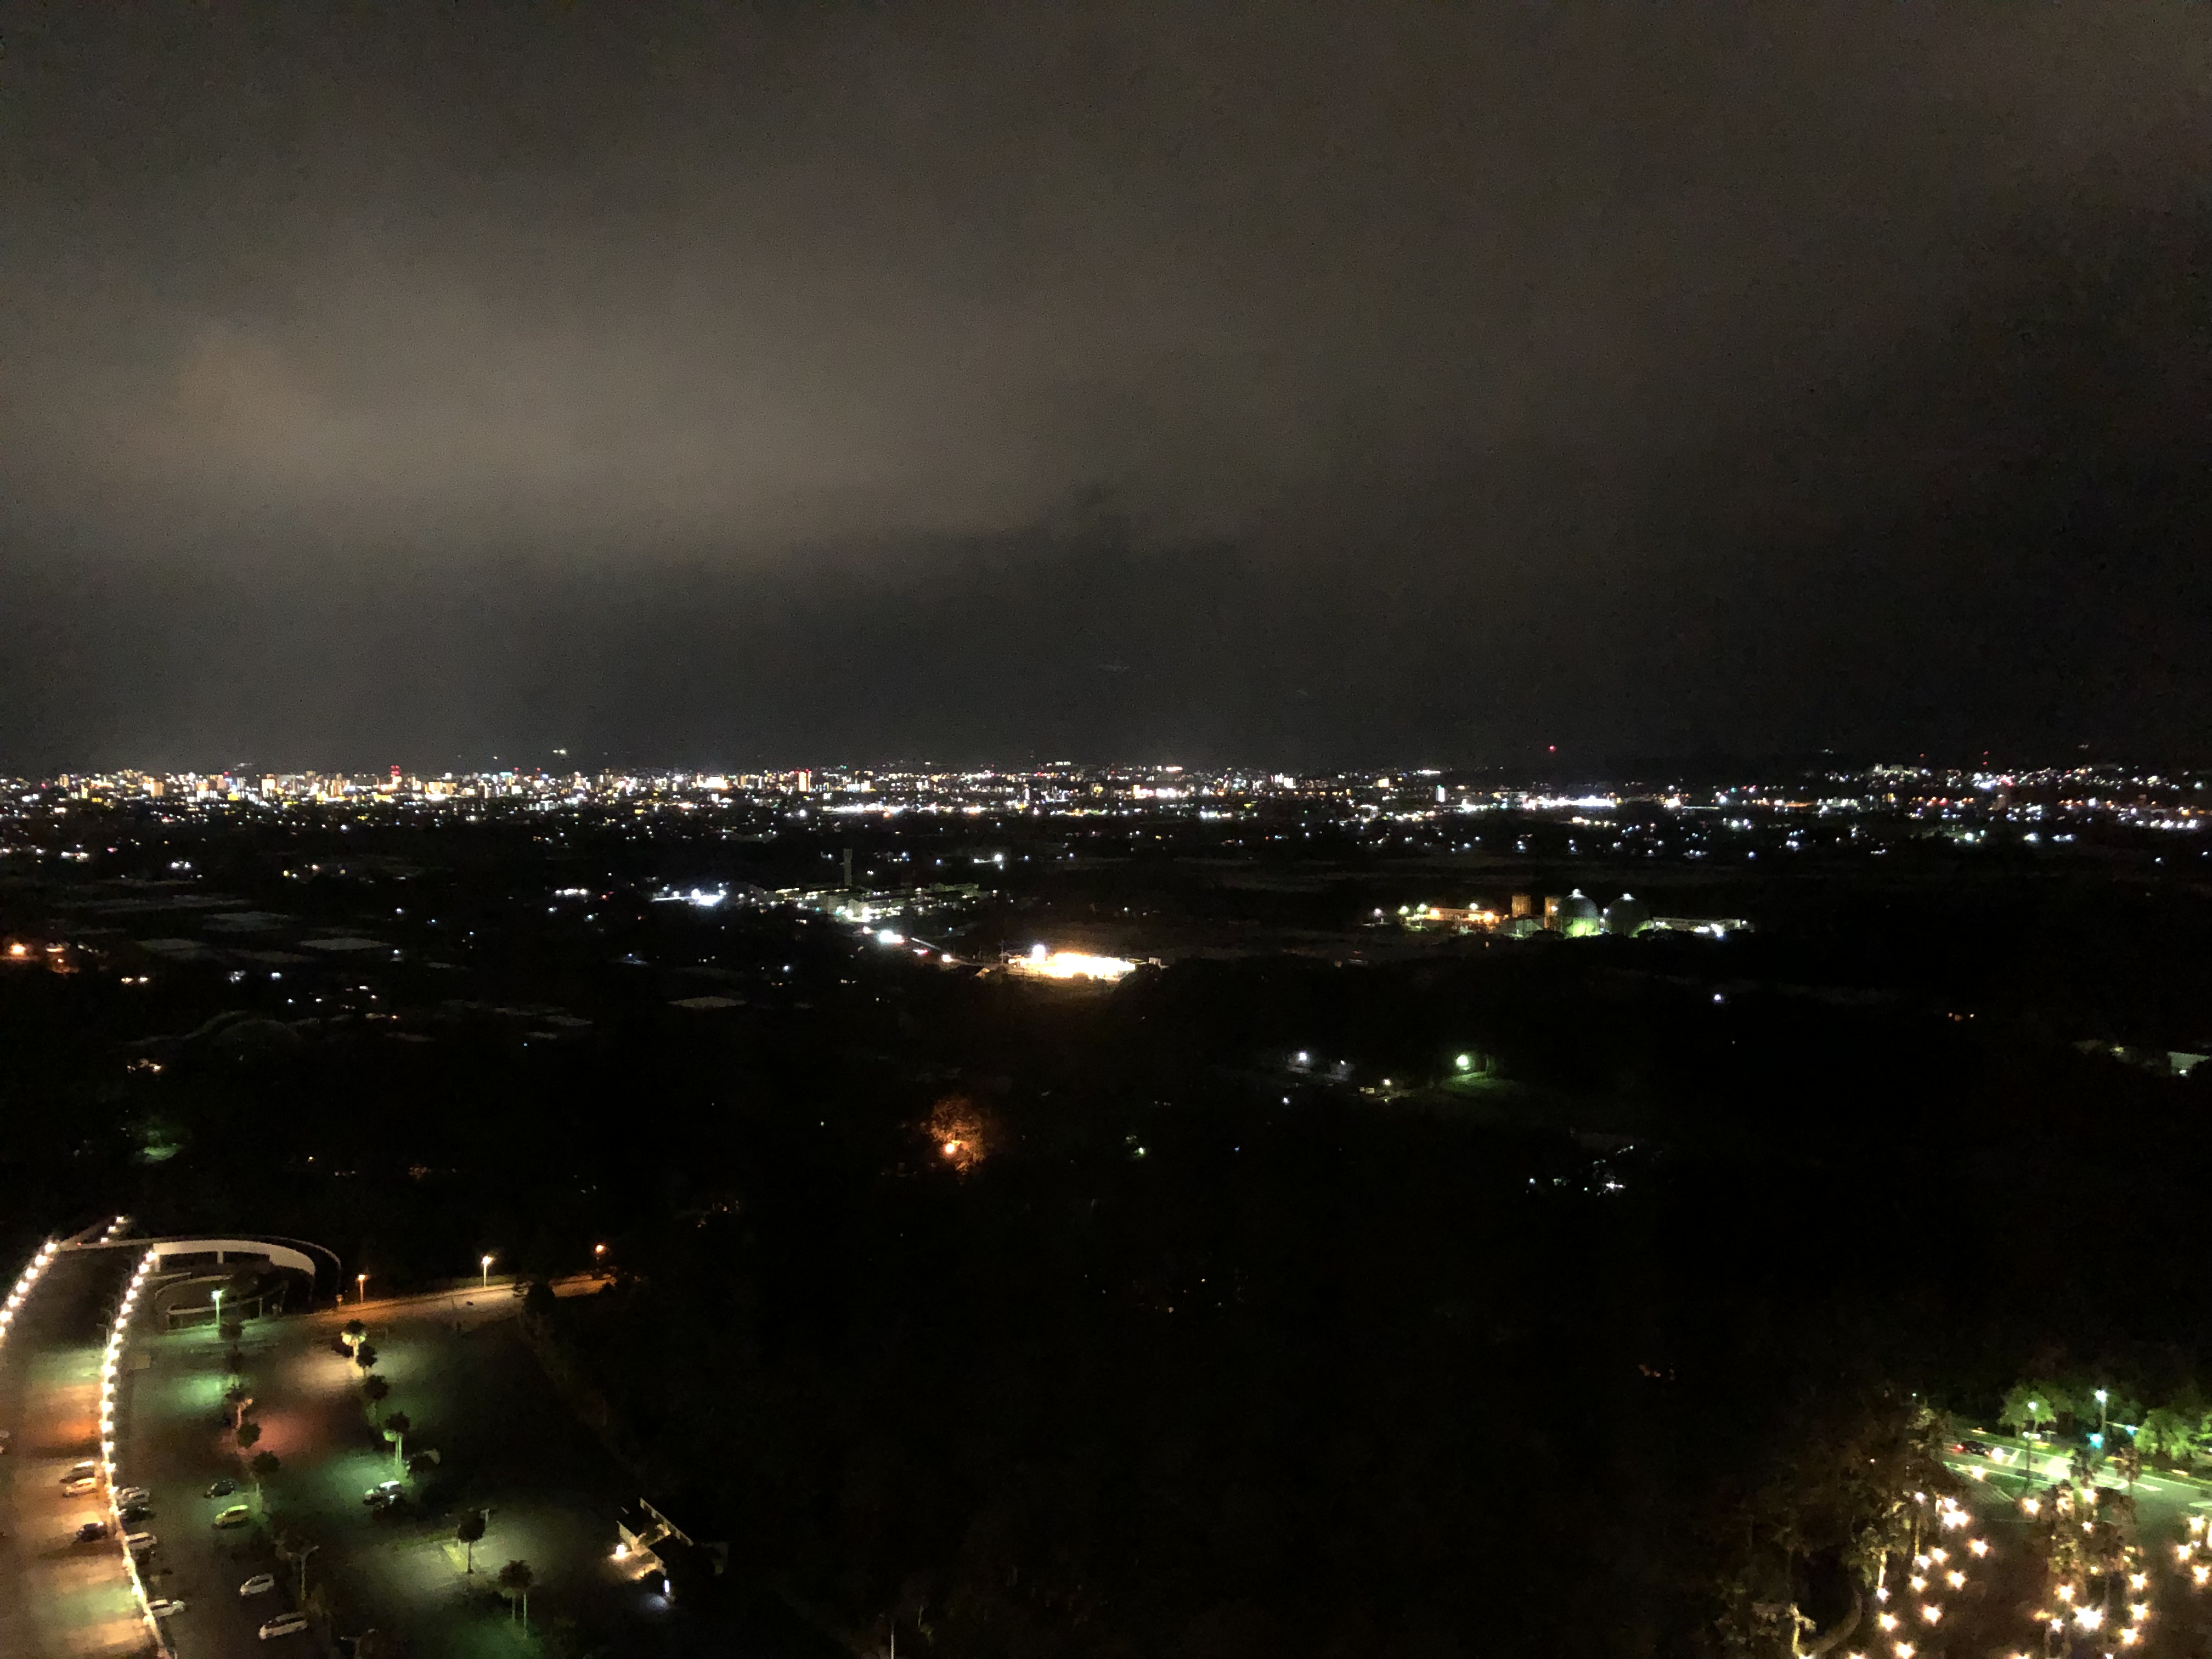 コーナースイート夜景 シェラトン・グランデ・オーシャンリゾート